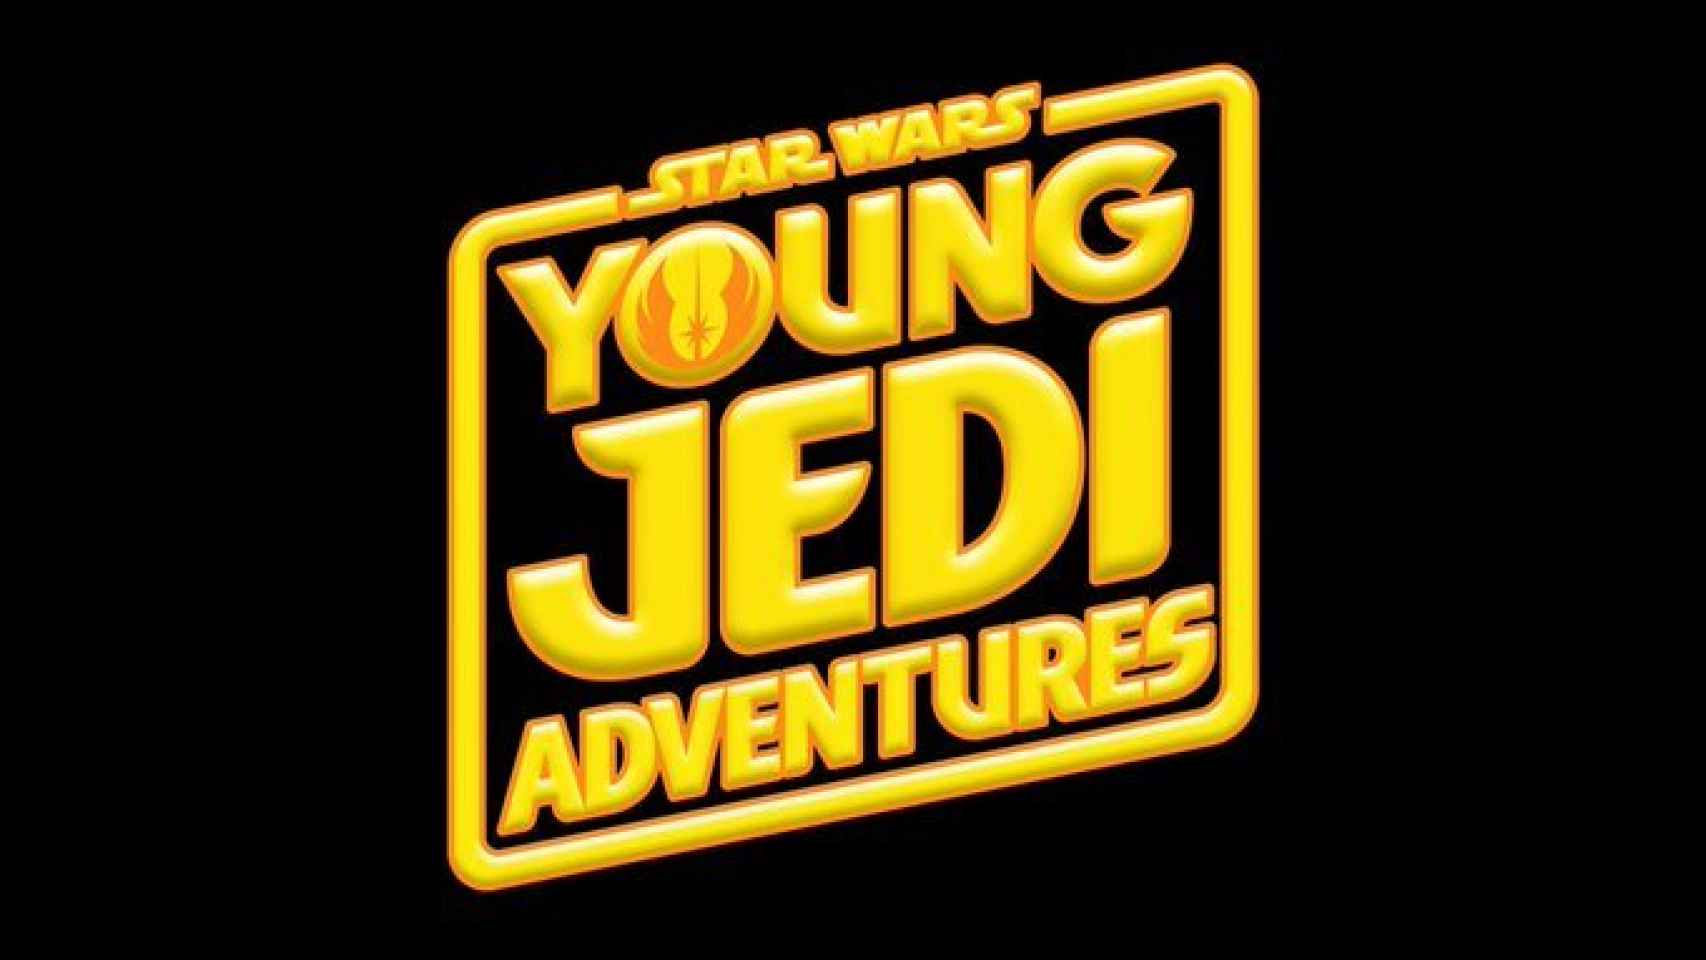 Imagen de 'Star Wars: Young Jedi Adventures'.